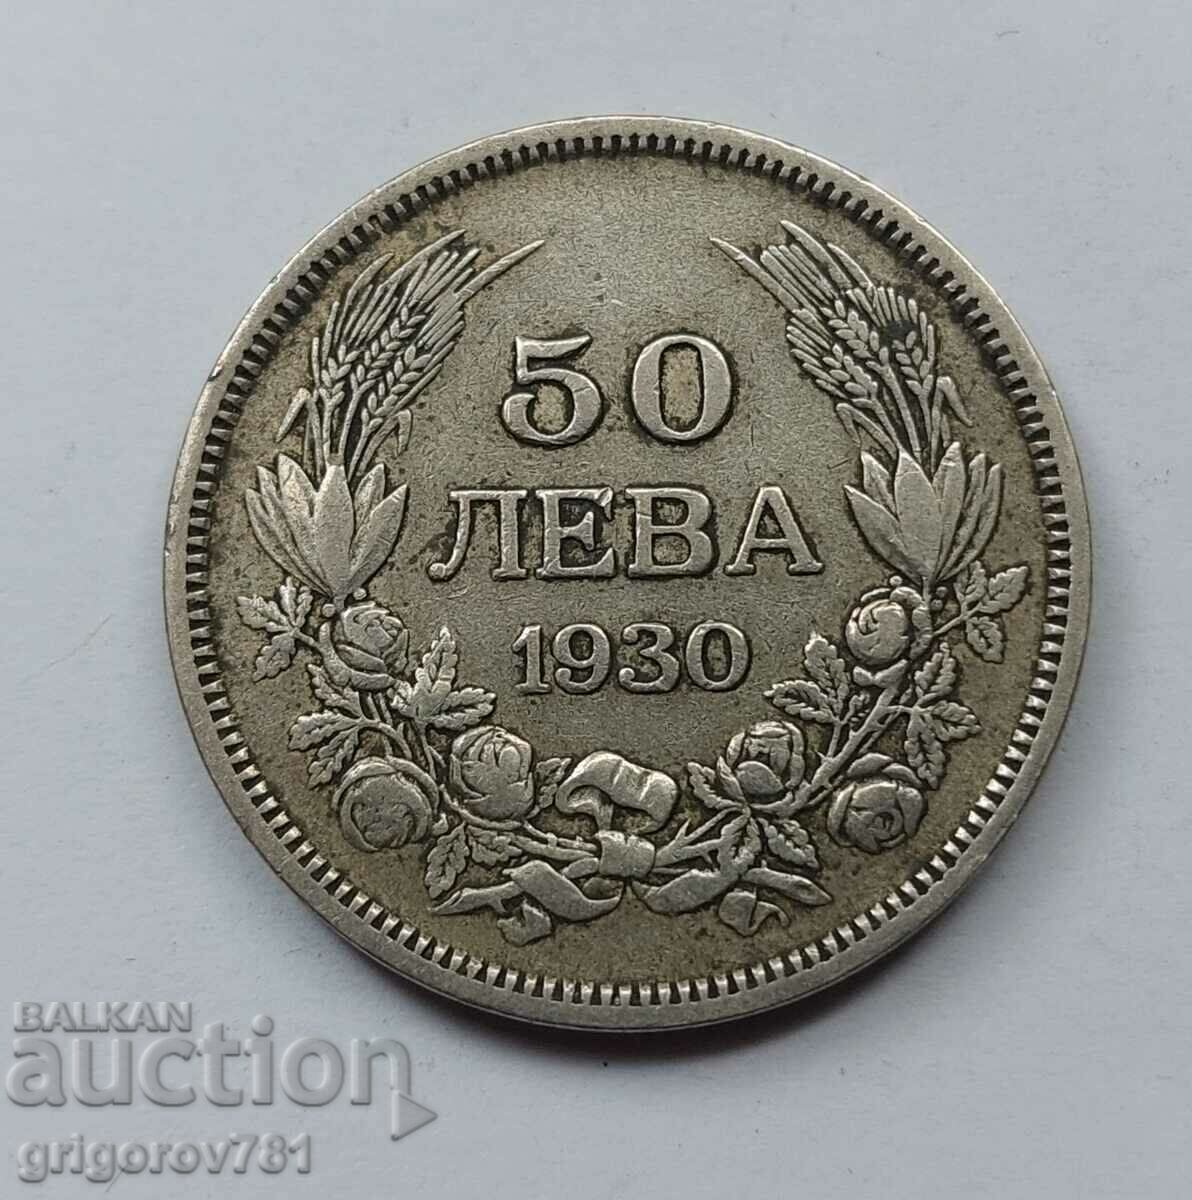 50 leva silver Bulgaria 1930 - silver coin #71